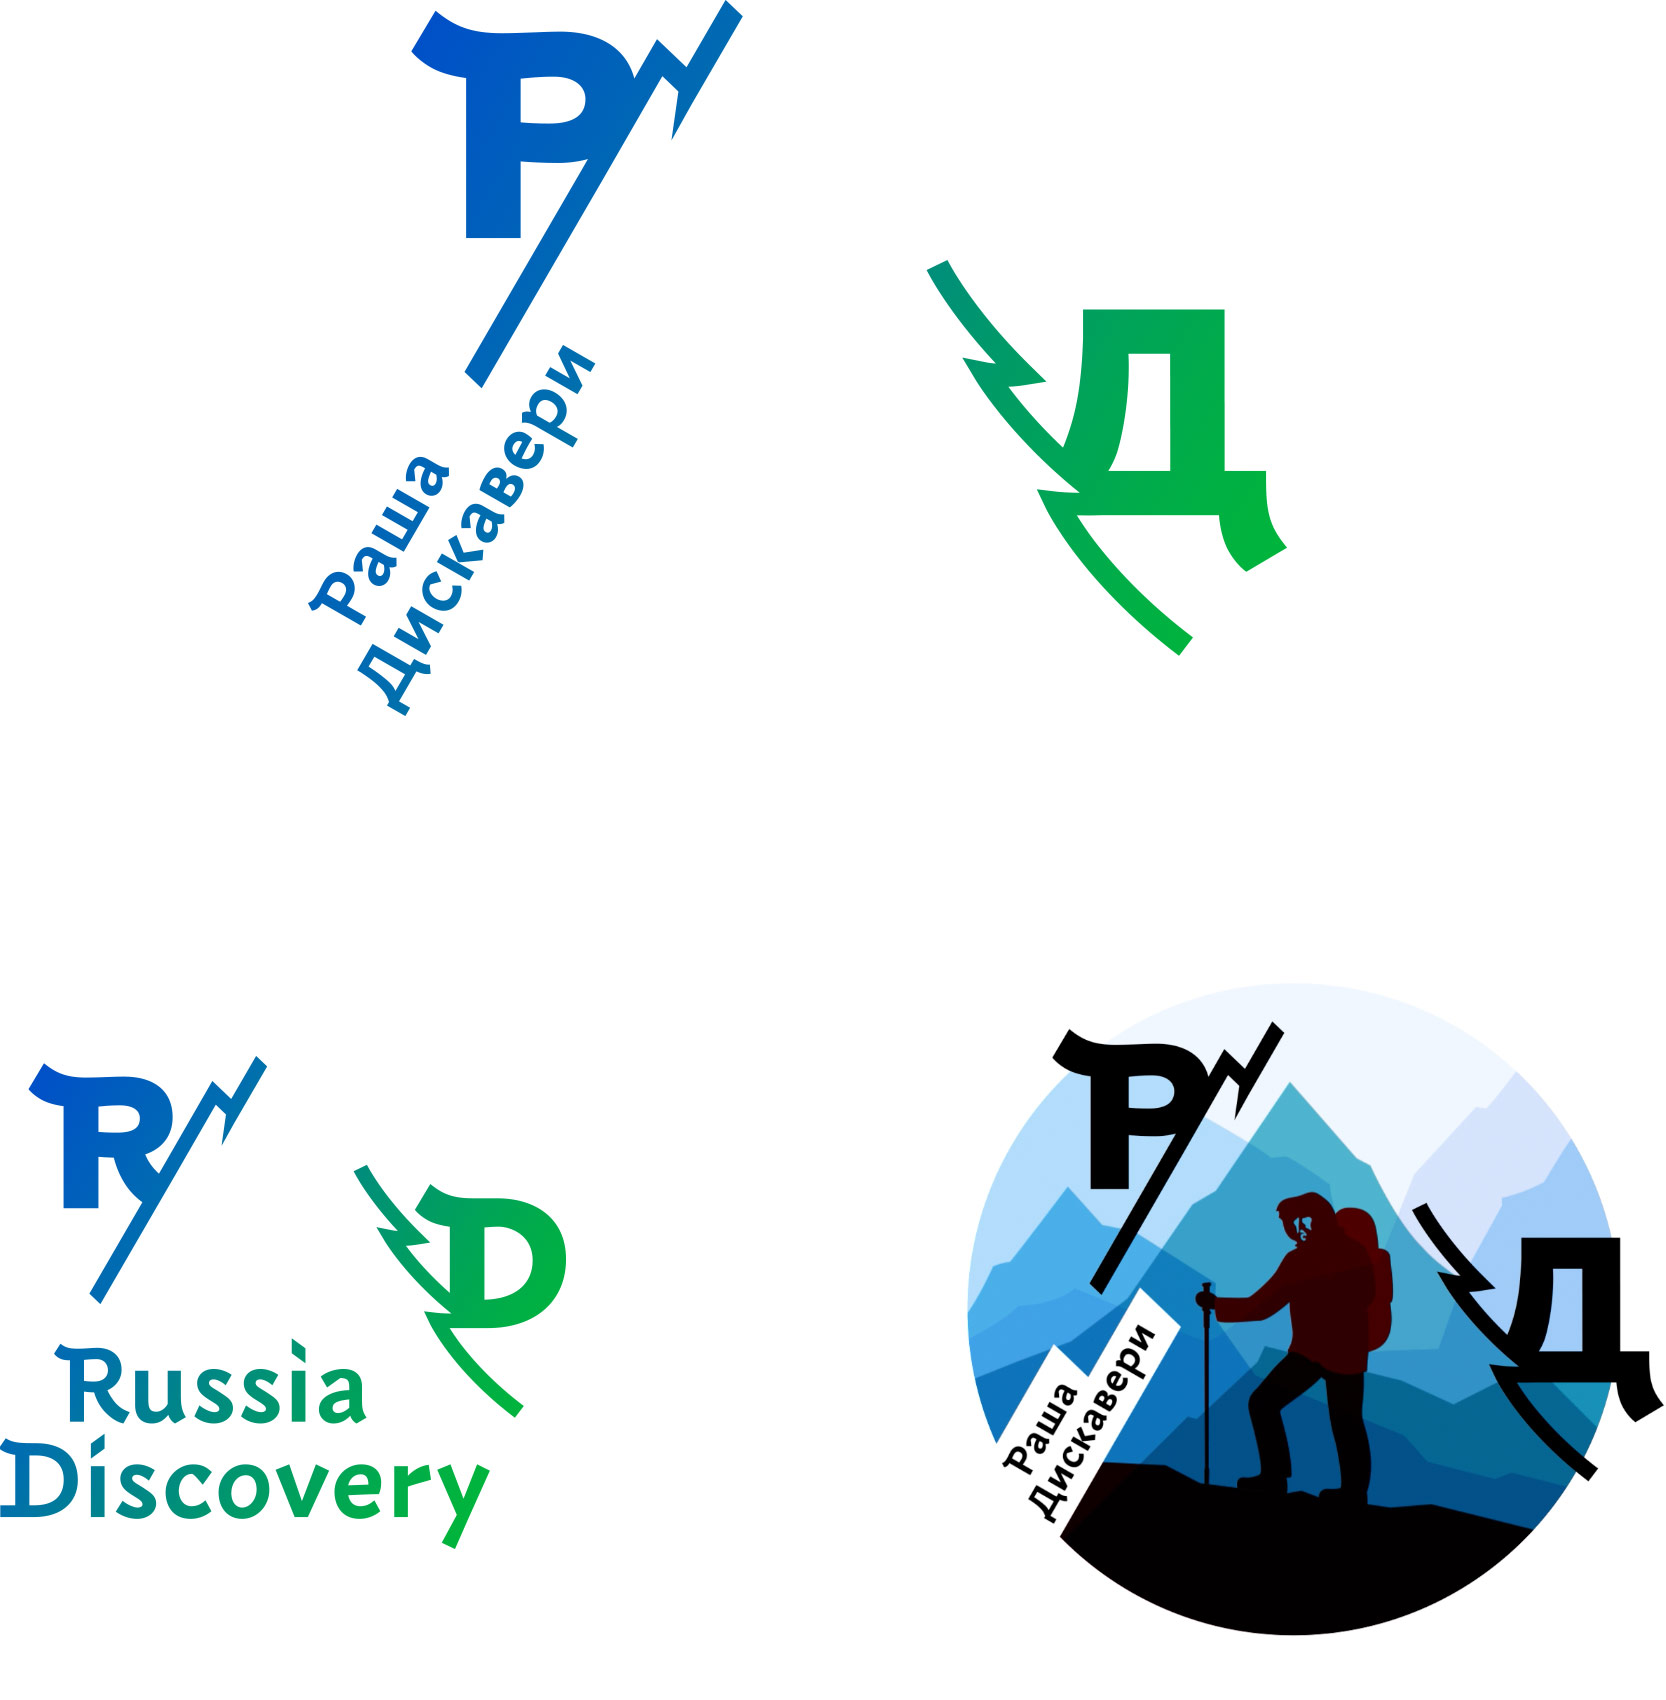 Раша Дискавери туроператор. Russia Discovery логотип. Russian Discovery турфирма. Russia Discovery туроператор логотип. Discover russian